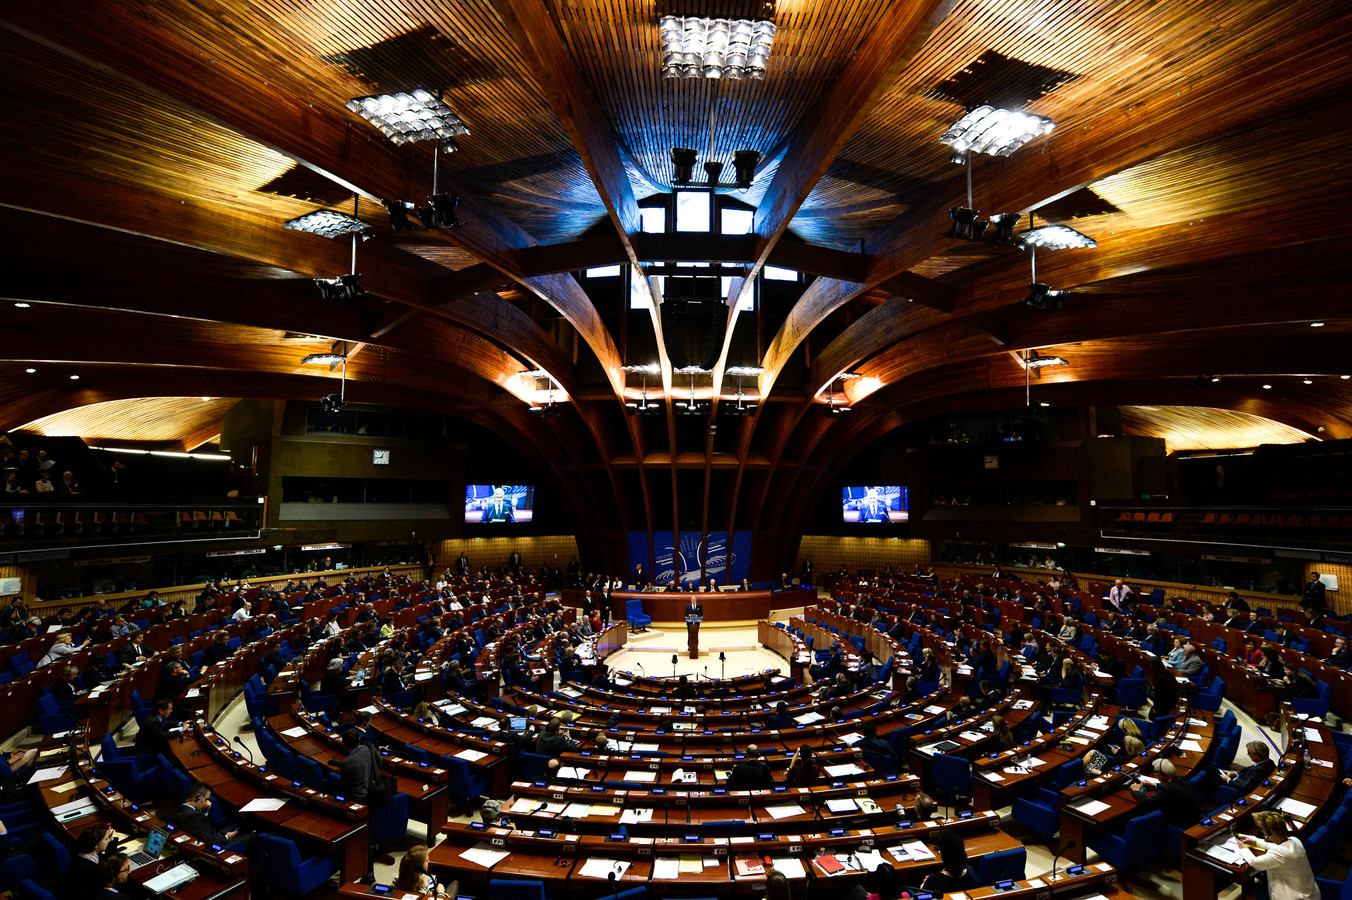 Международный европейский суд. Совет Европы и Европейский суд по правам человека. Суд по правам человека в Страсбурге. Здание европейского суда по правам человека в Страсбурге. ЕСПЧ совет Европы.